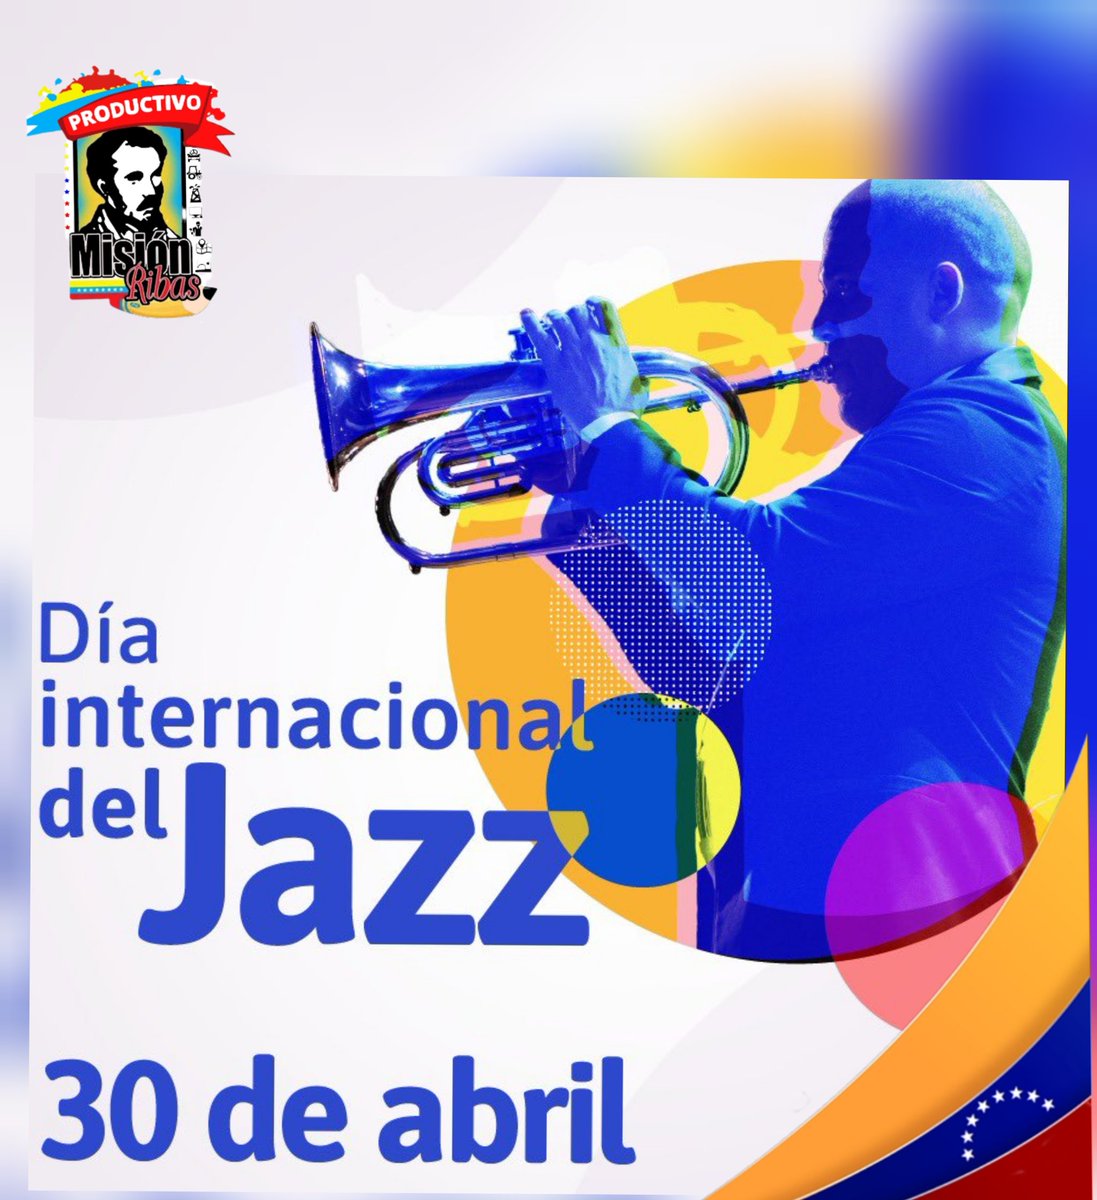 #Efemérides del dia.
 Hoy #30Abril
Celebramos el 
Día Internacional del Jazz. 

@NicolasMaduro 
@_LaAvanzadora
 @PoetaLaya 
@DraGerencia
@M_RibasOficial
@misionribaszul1
#SomosPuebloUnido